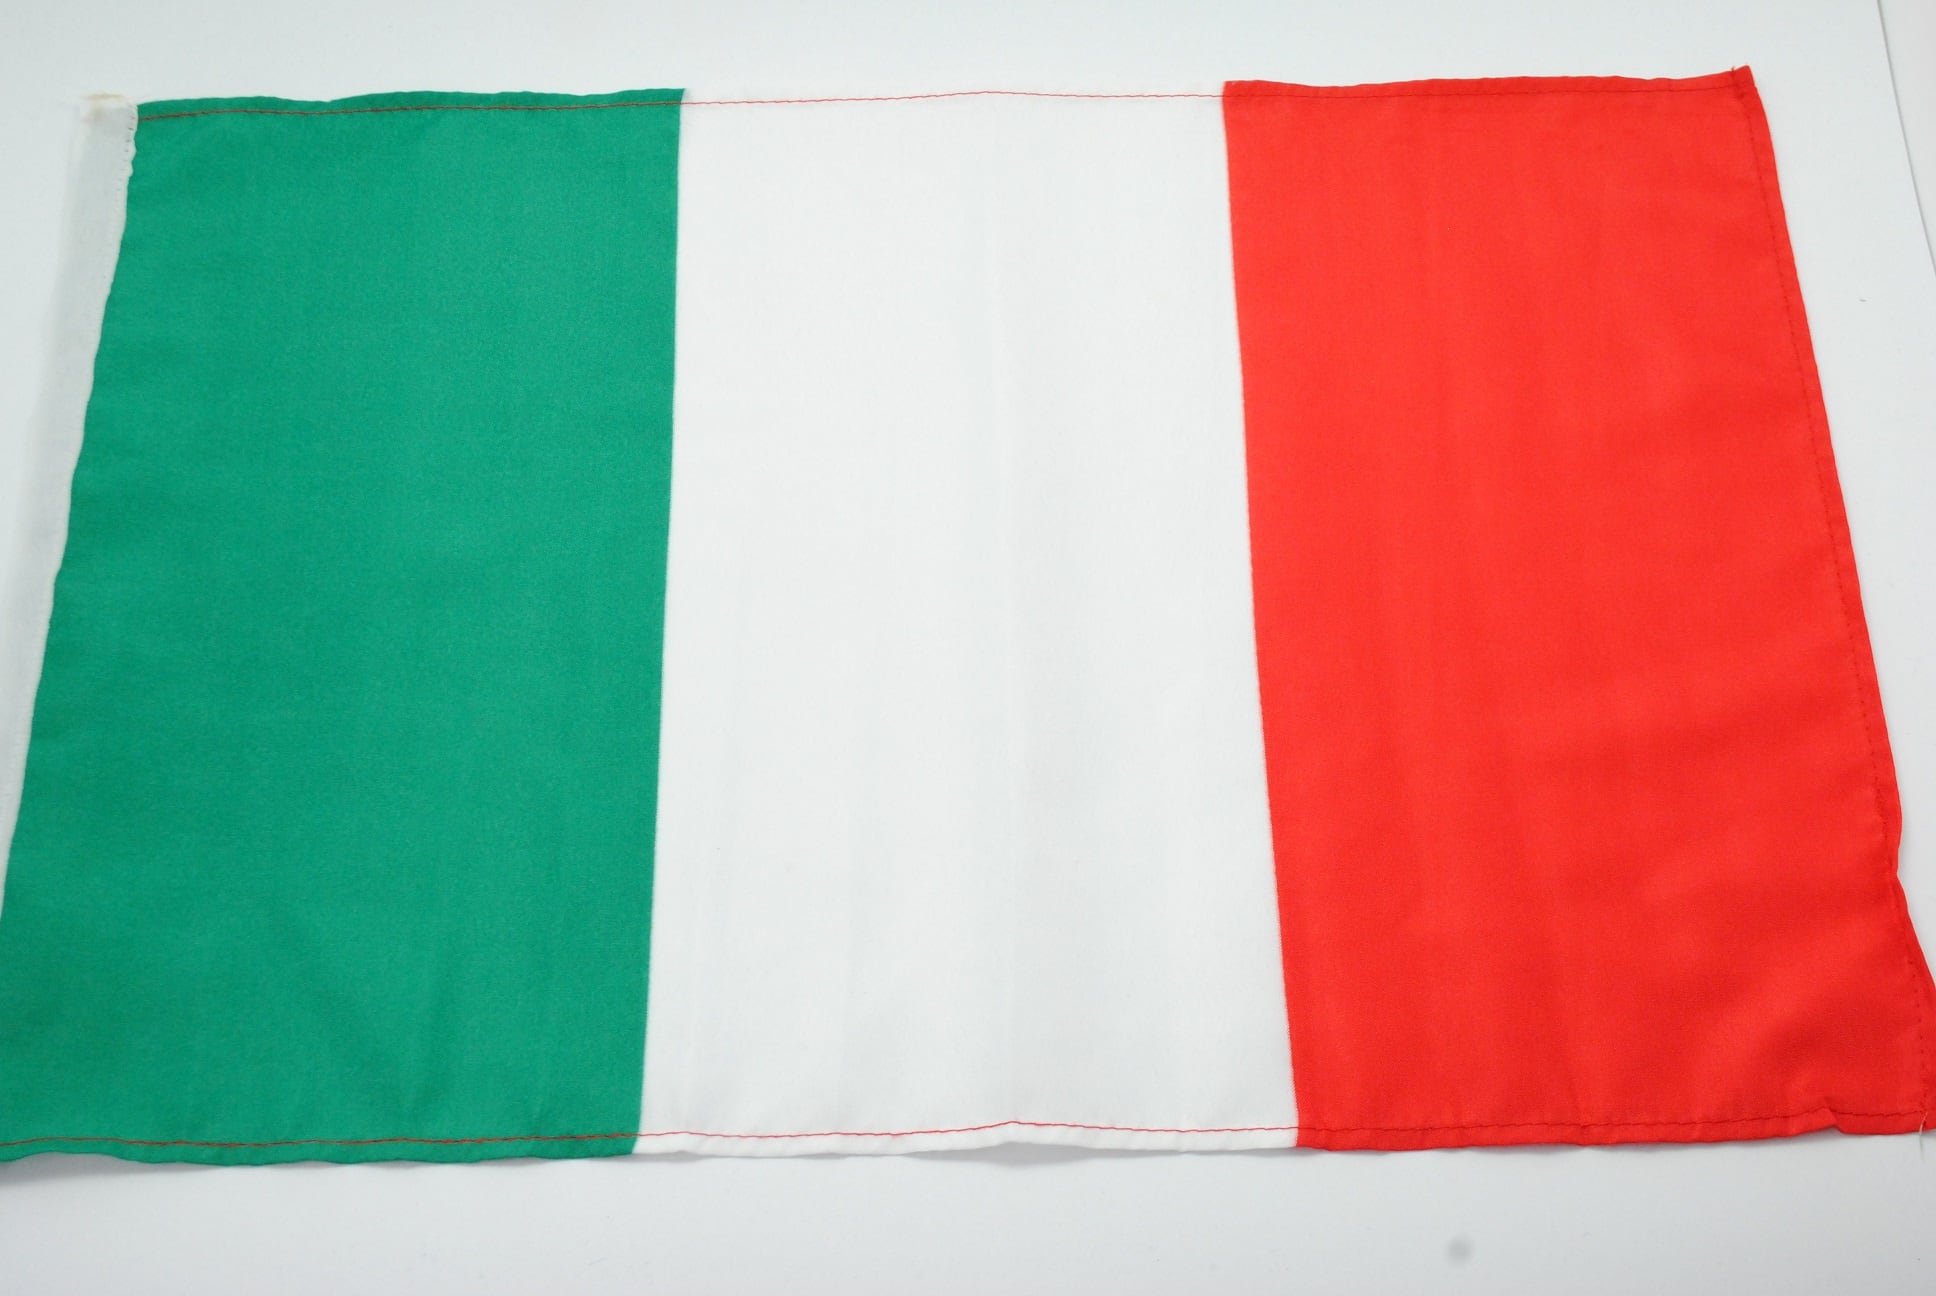 Fahne Italien, 90x150 cm